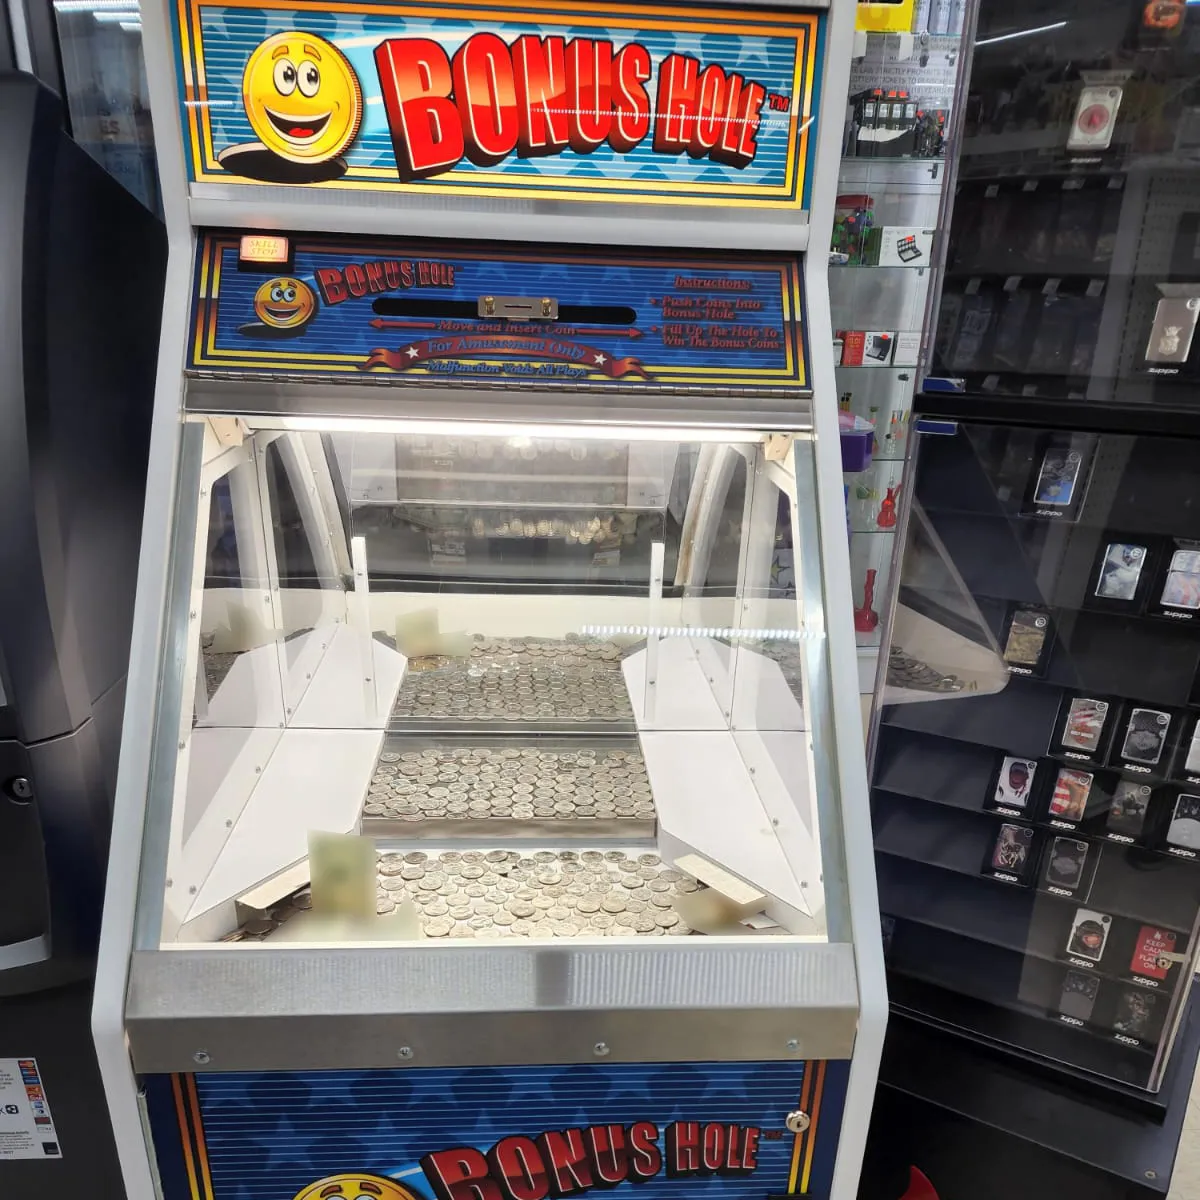 Arcade Ticket Einlösung Spiel automat Münz schieber Münz betriebene Spiele Bonus Hole Coin Pusher